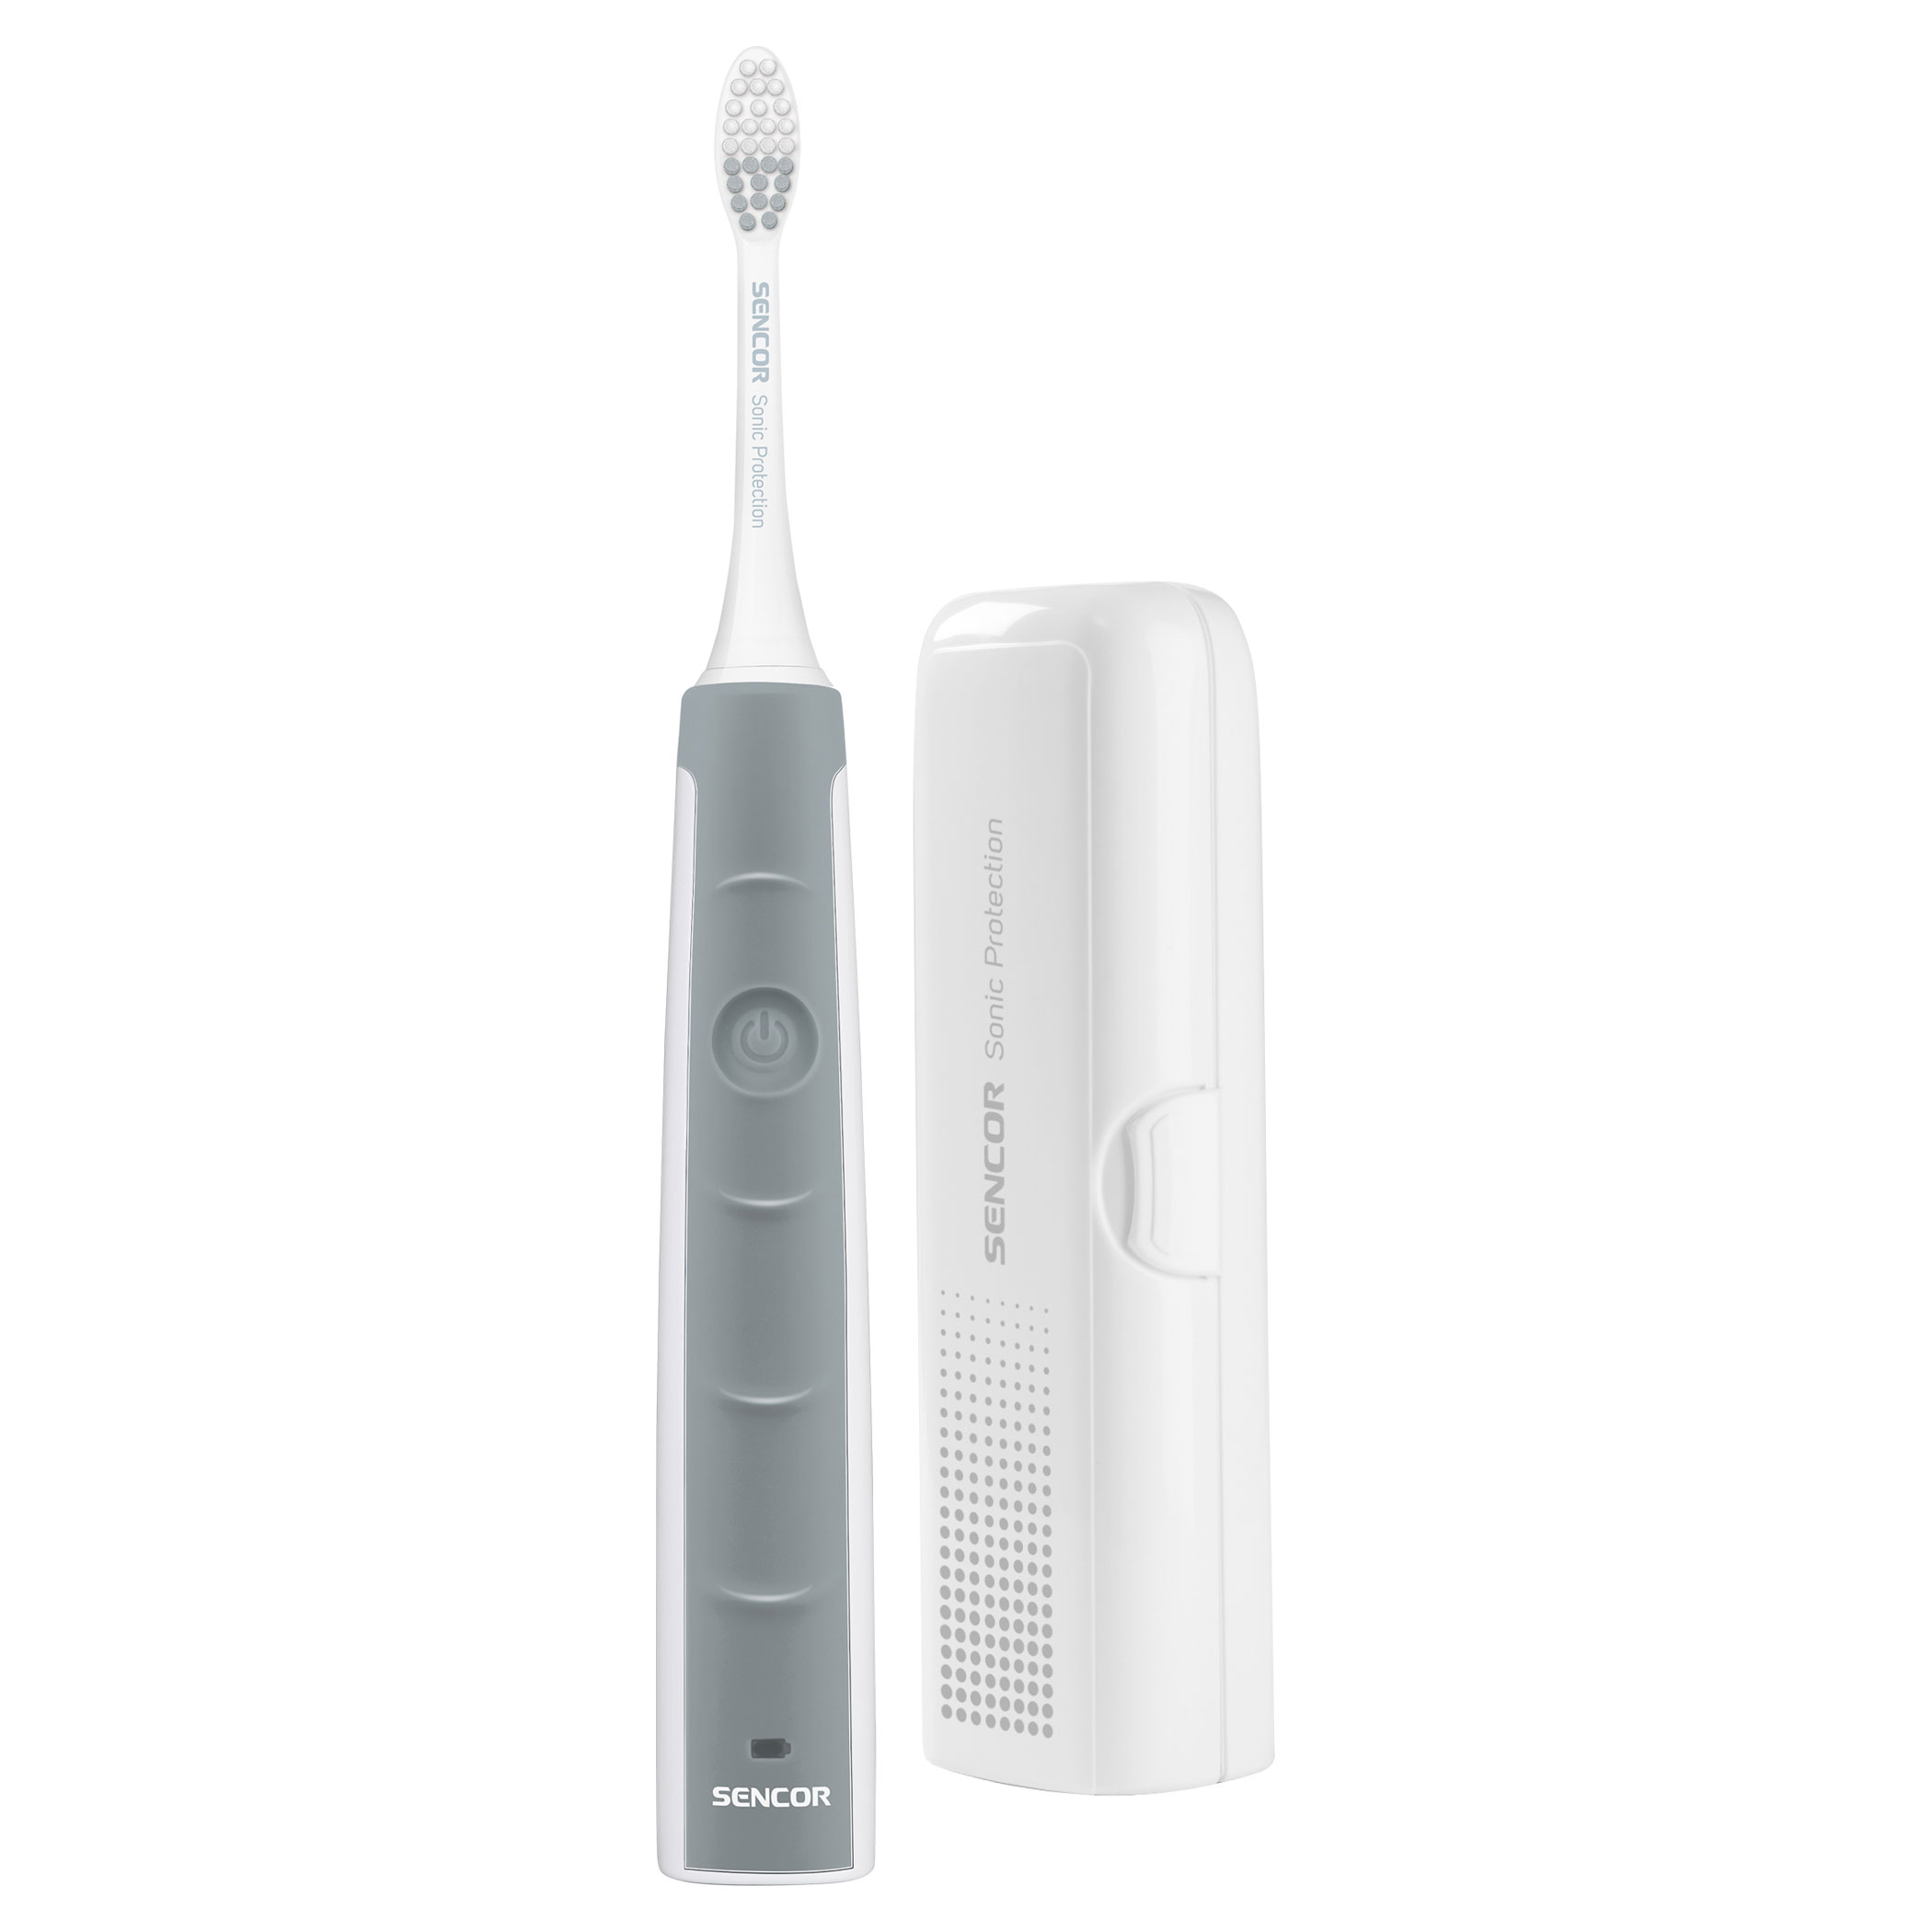 Электрическая зубная щетка Sencor SOC 1100 Silver электрическая зубная щетка soocas spark mt1 silver 2 насадки